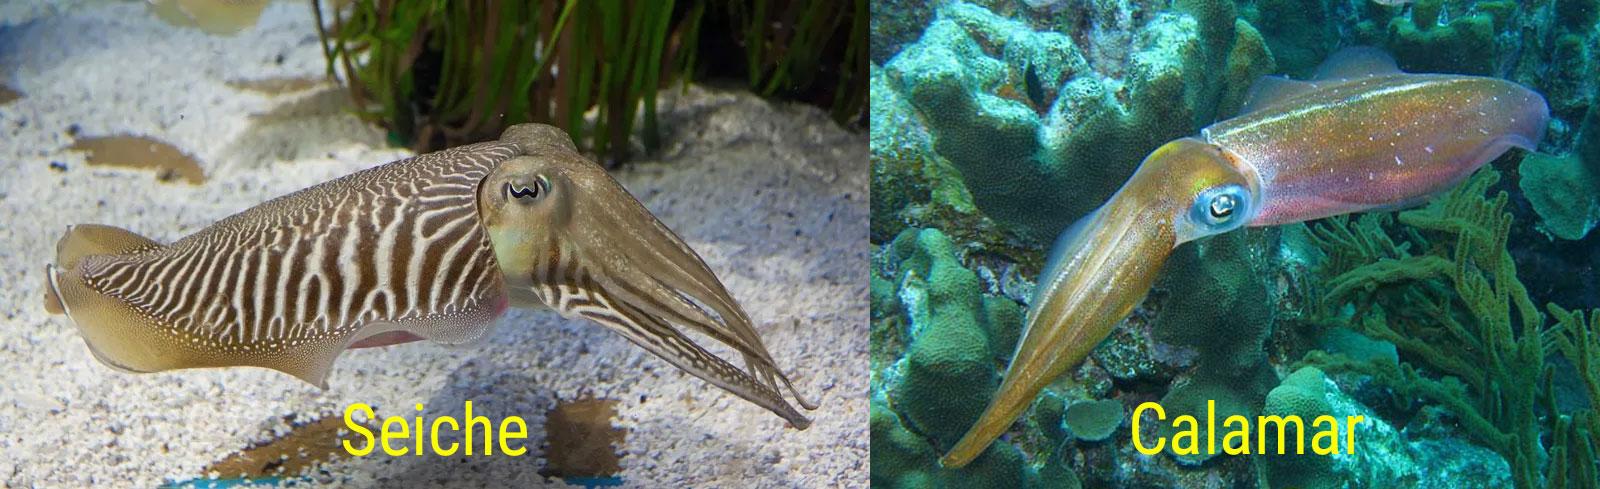 Comparaison-seiche-vs-calamar